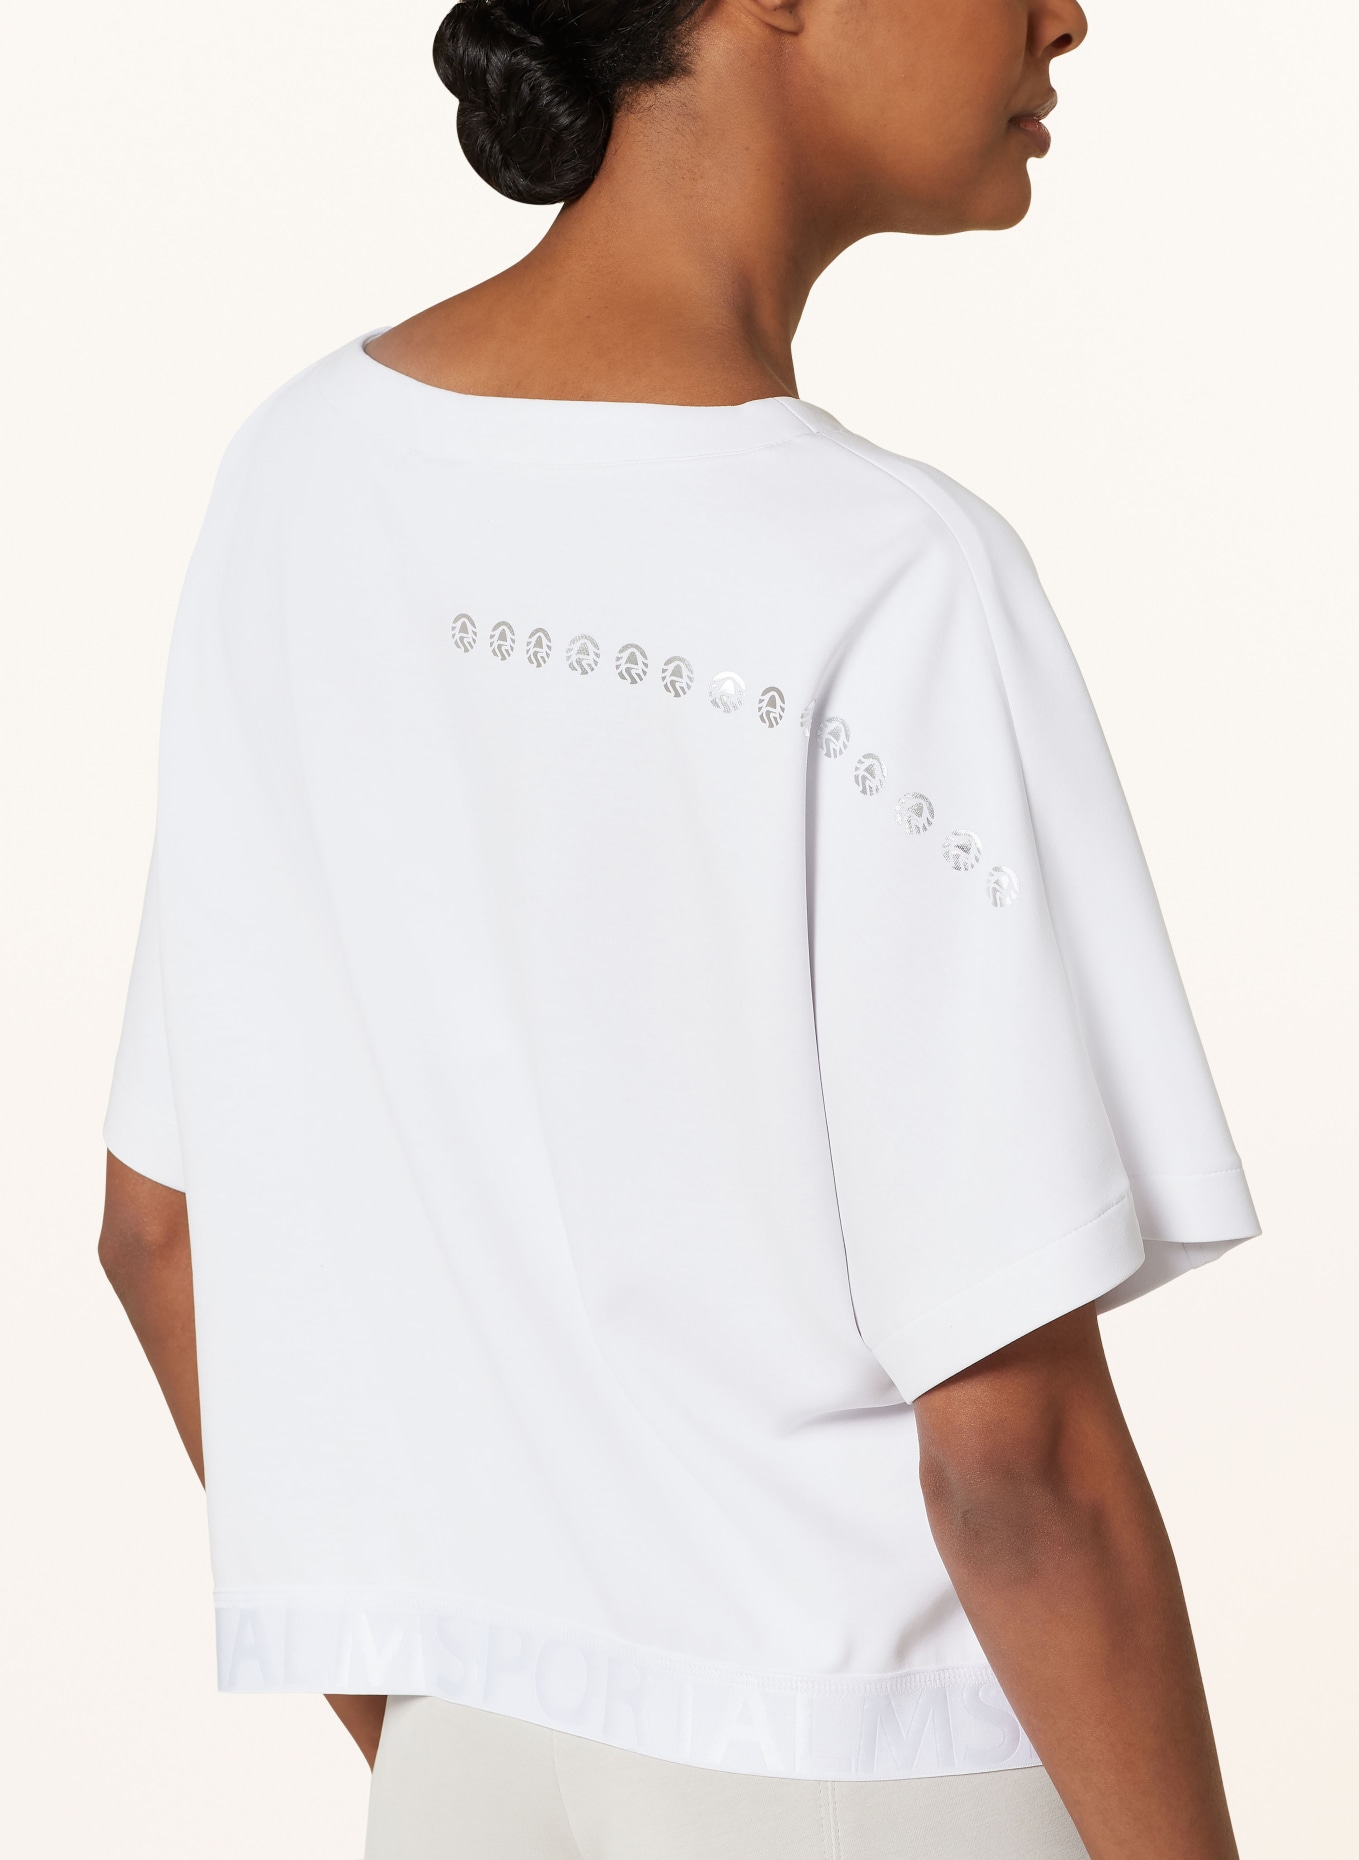 ULLI EHRLICH SPORTALM T-shirt, Color: WHITE (Image 4)